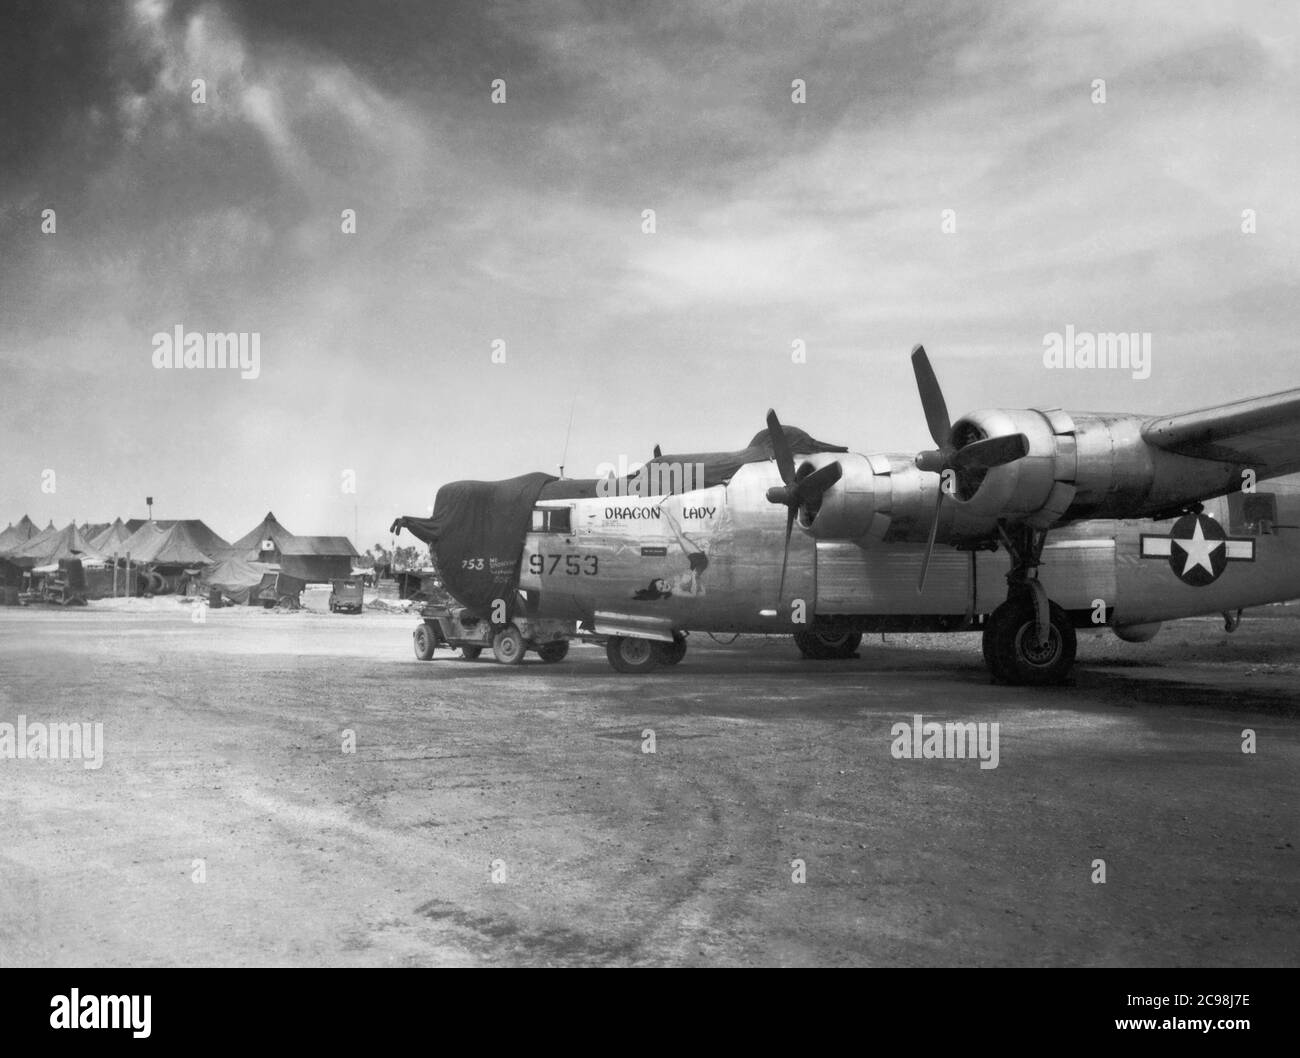 Konsolidierte B-24 Liberator Nummer 9753, 'Dragon Lady', zwischen Missionen auf Guam, Juli 1945. Zum 75. Jahrestag des V-J Day hat die Consoli Collection vier Fotoessays von U.S. Navy LT. (j.g.) veröffentlicht. Joseph J. Consoli. Die Fotos wurden zwischen Juli und Dezember 1945 auf den Marianen aufgenommen. Sie dokumentieren das Leben der US-Marine vor und nach der japanischen Kapitulation. Stockfoto